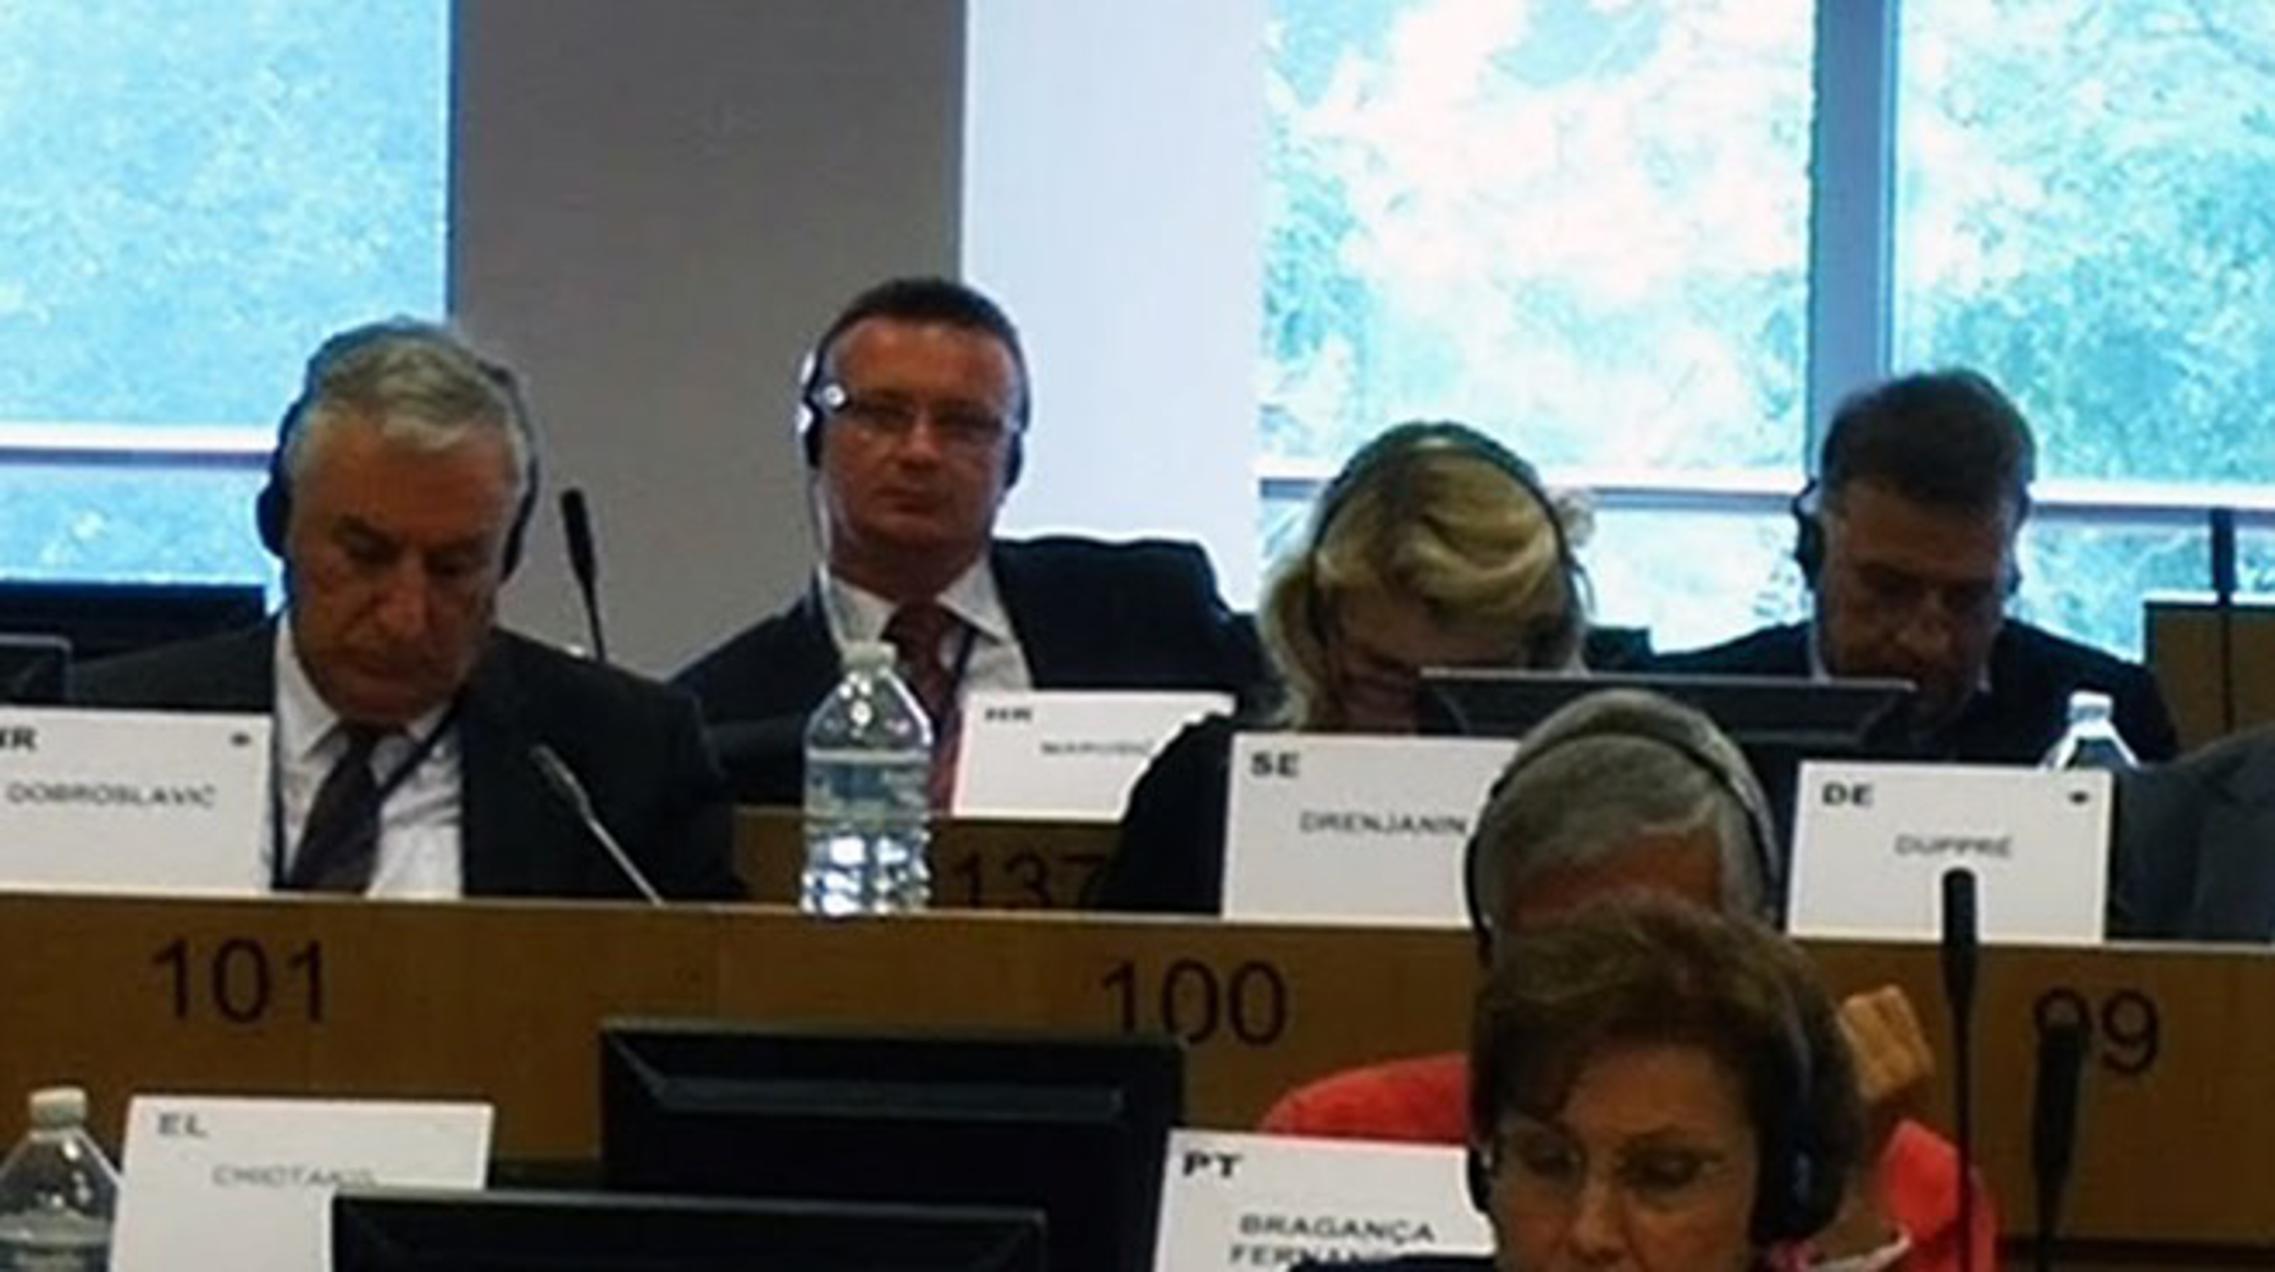 Župan Marušić na plenarnoj sjednici